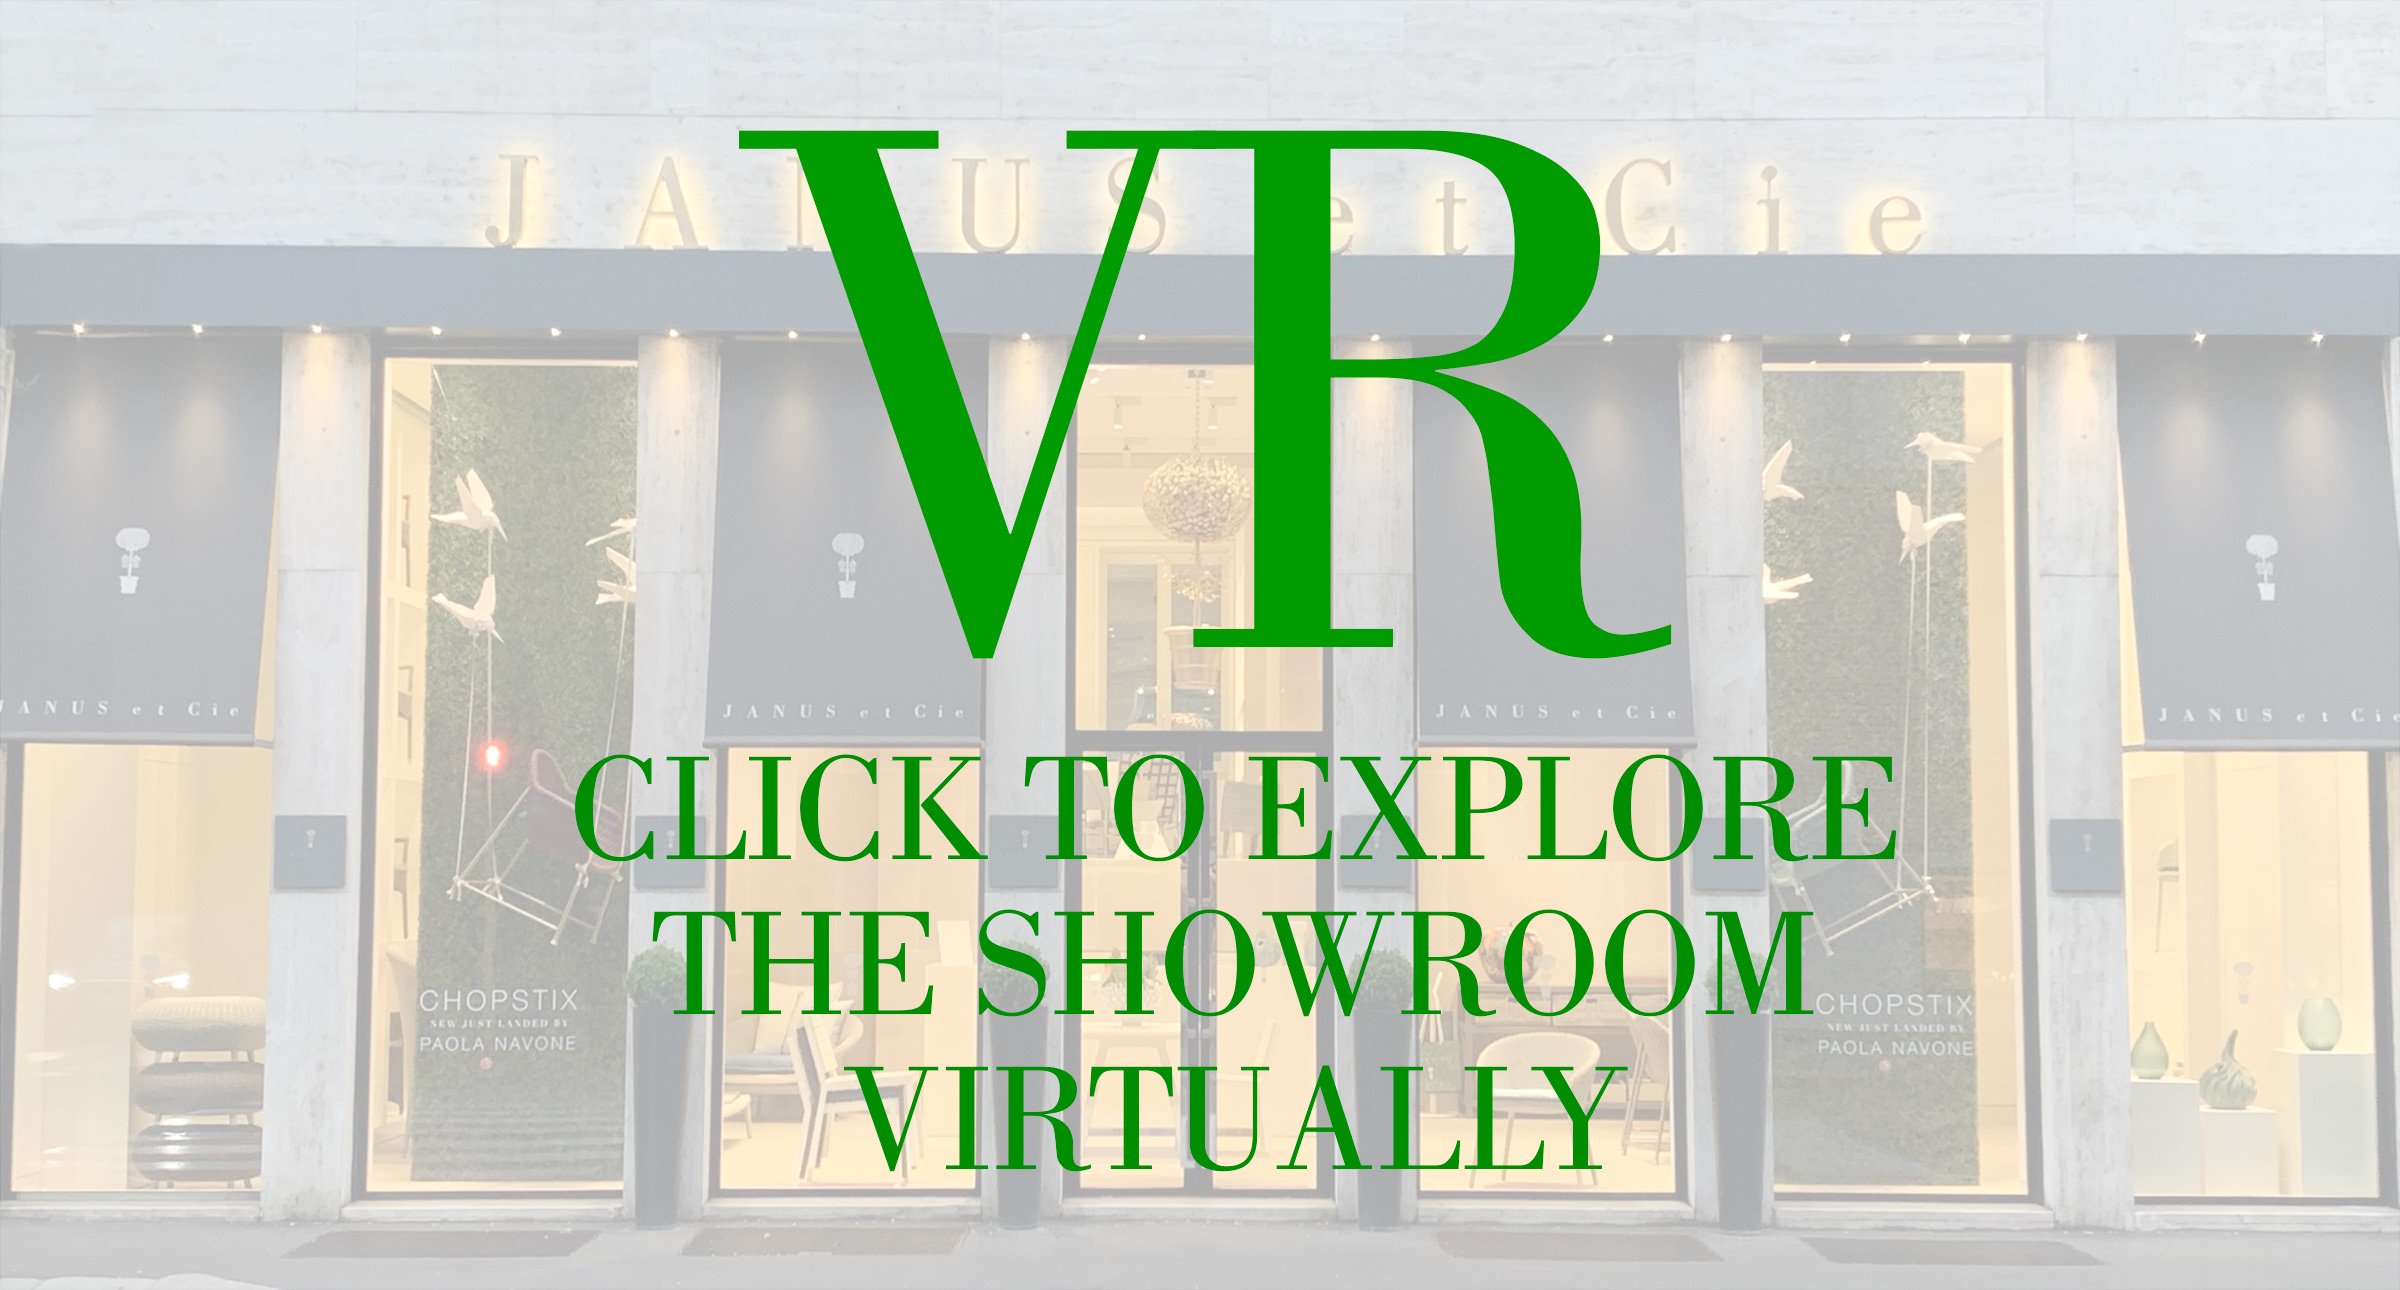 Image Slideshow Image: Milan VR Location Page